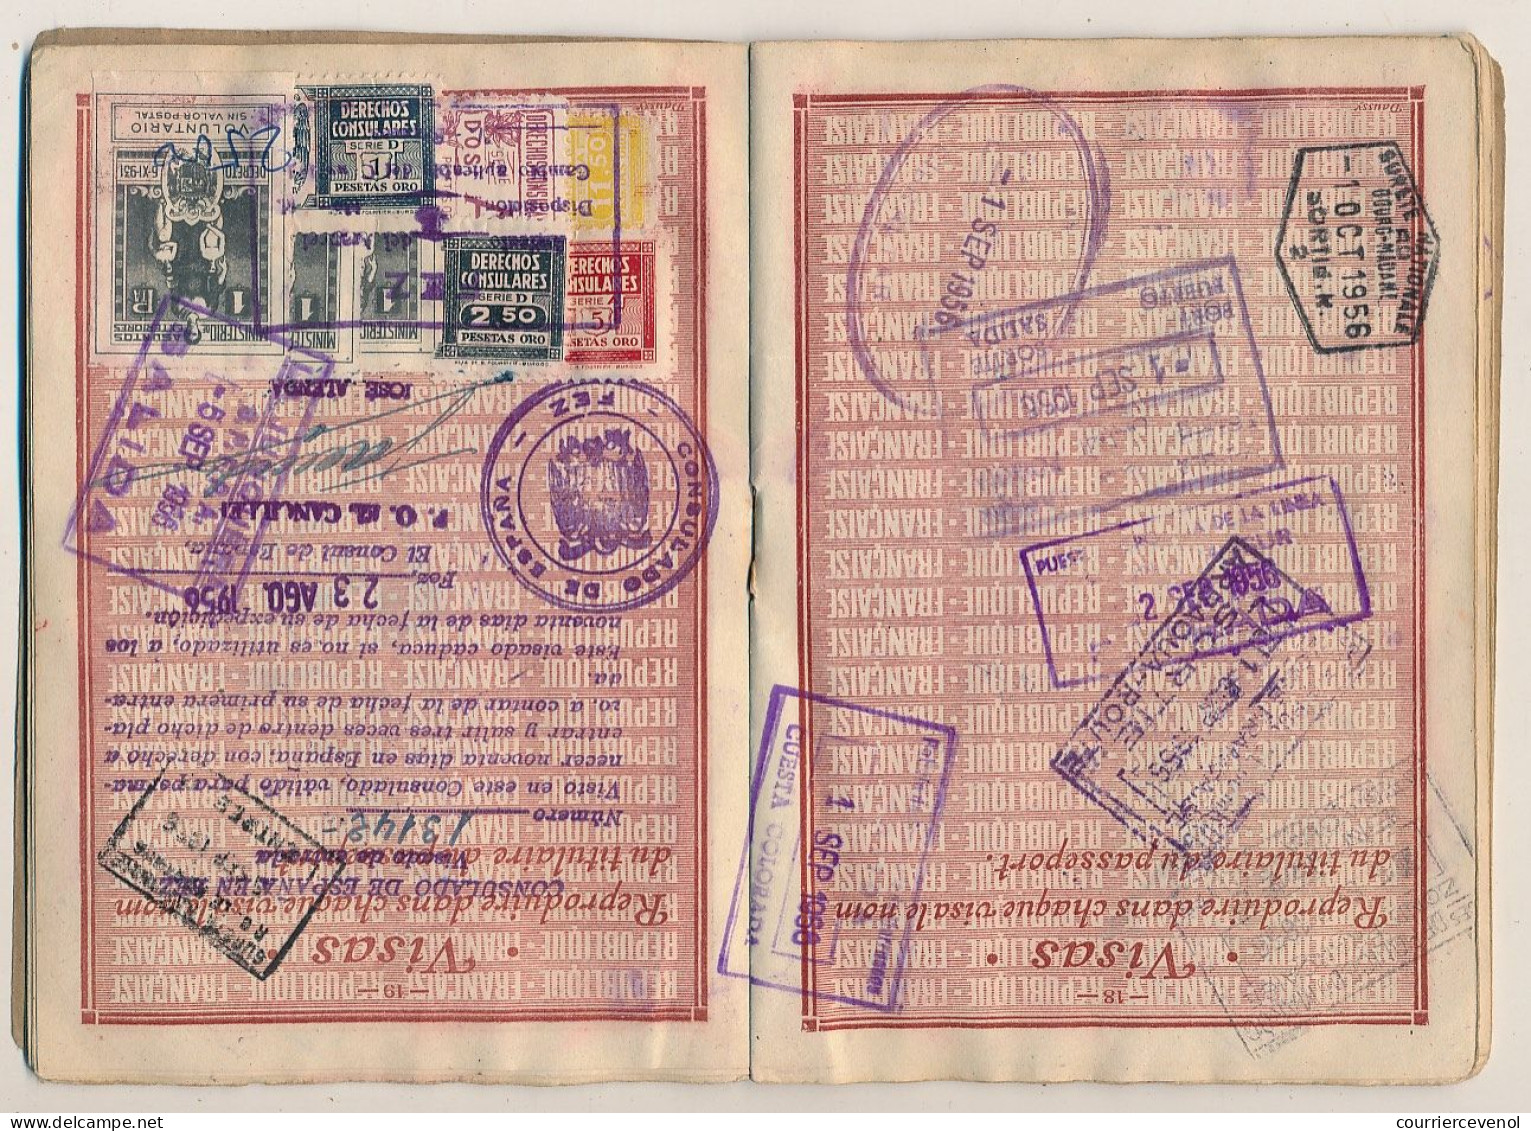 FRANCE / MAROC - Passeport 500 francs 1948/1957 - Vannes, renouvelé à Khénifra - Nombreux visas et fiscaux espagnols